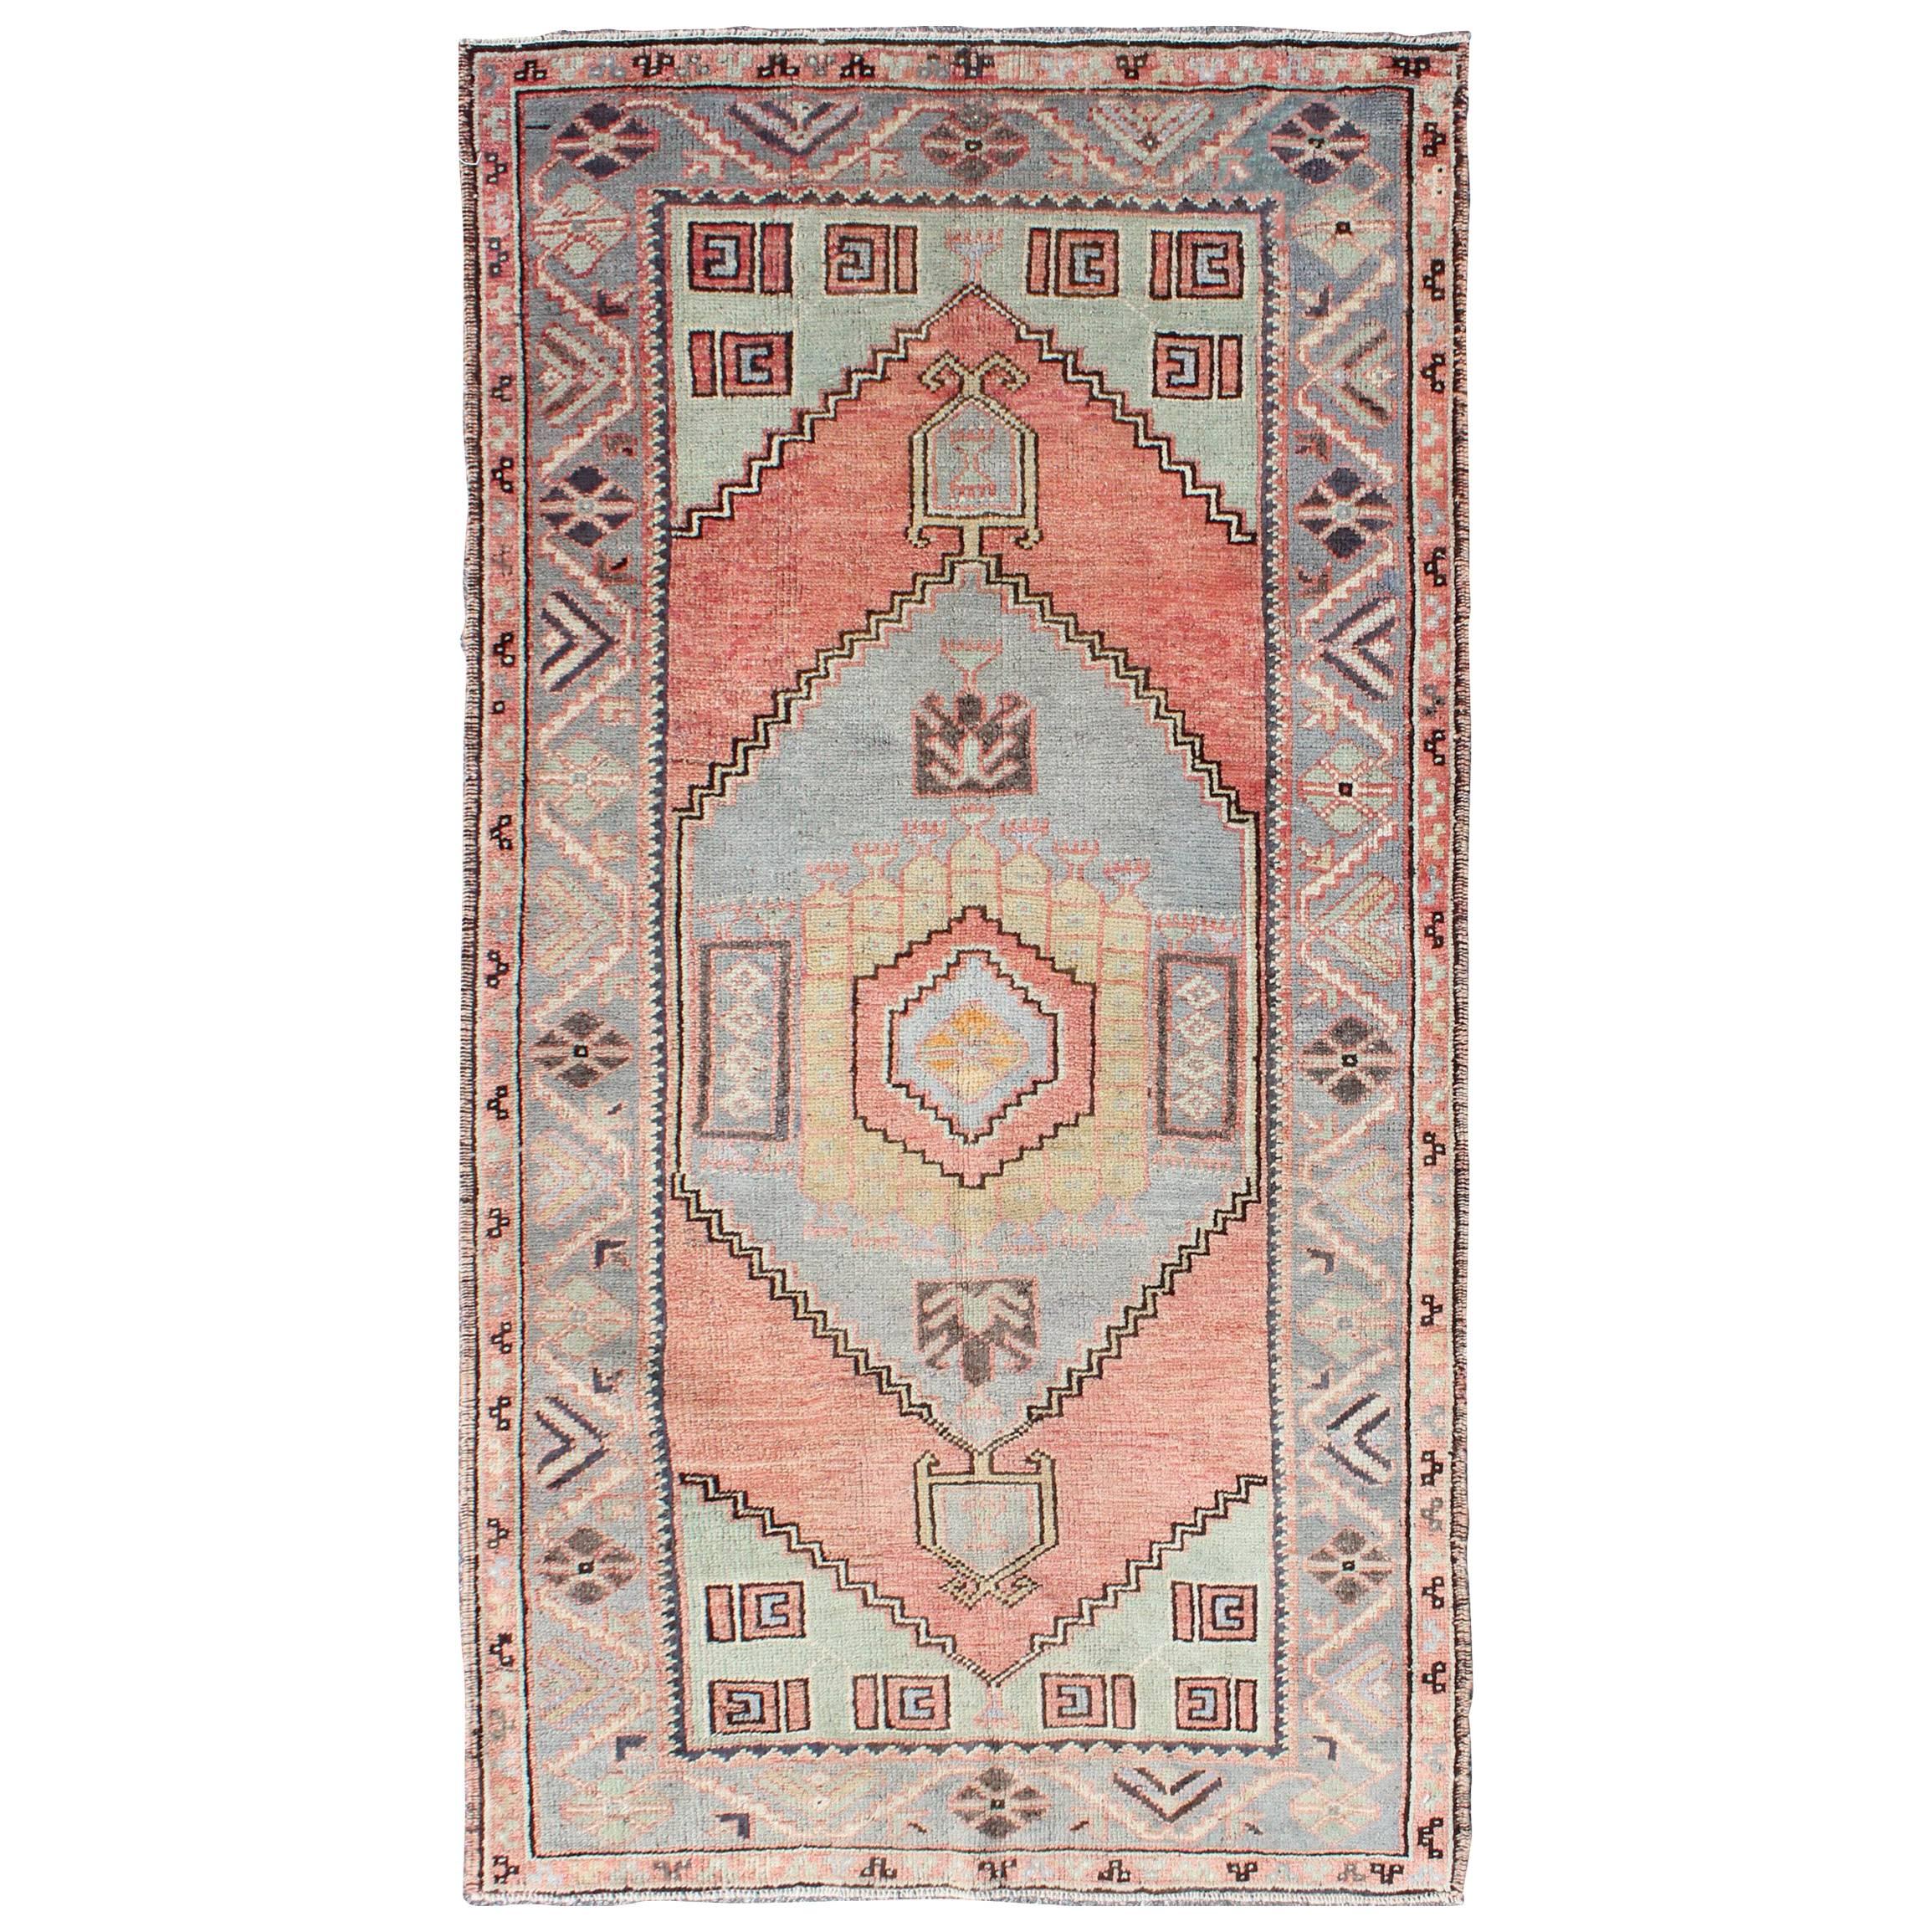 Türkischer Oushak-Teppich im Vintage-Stil mit Stammesmuster in Orang-Rot, Grün und Grau